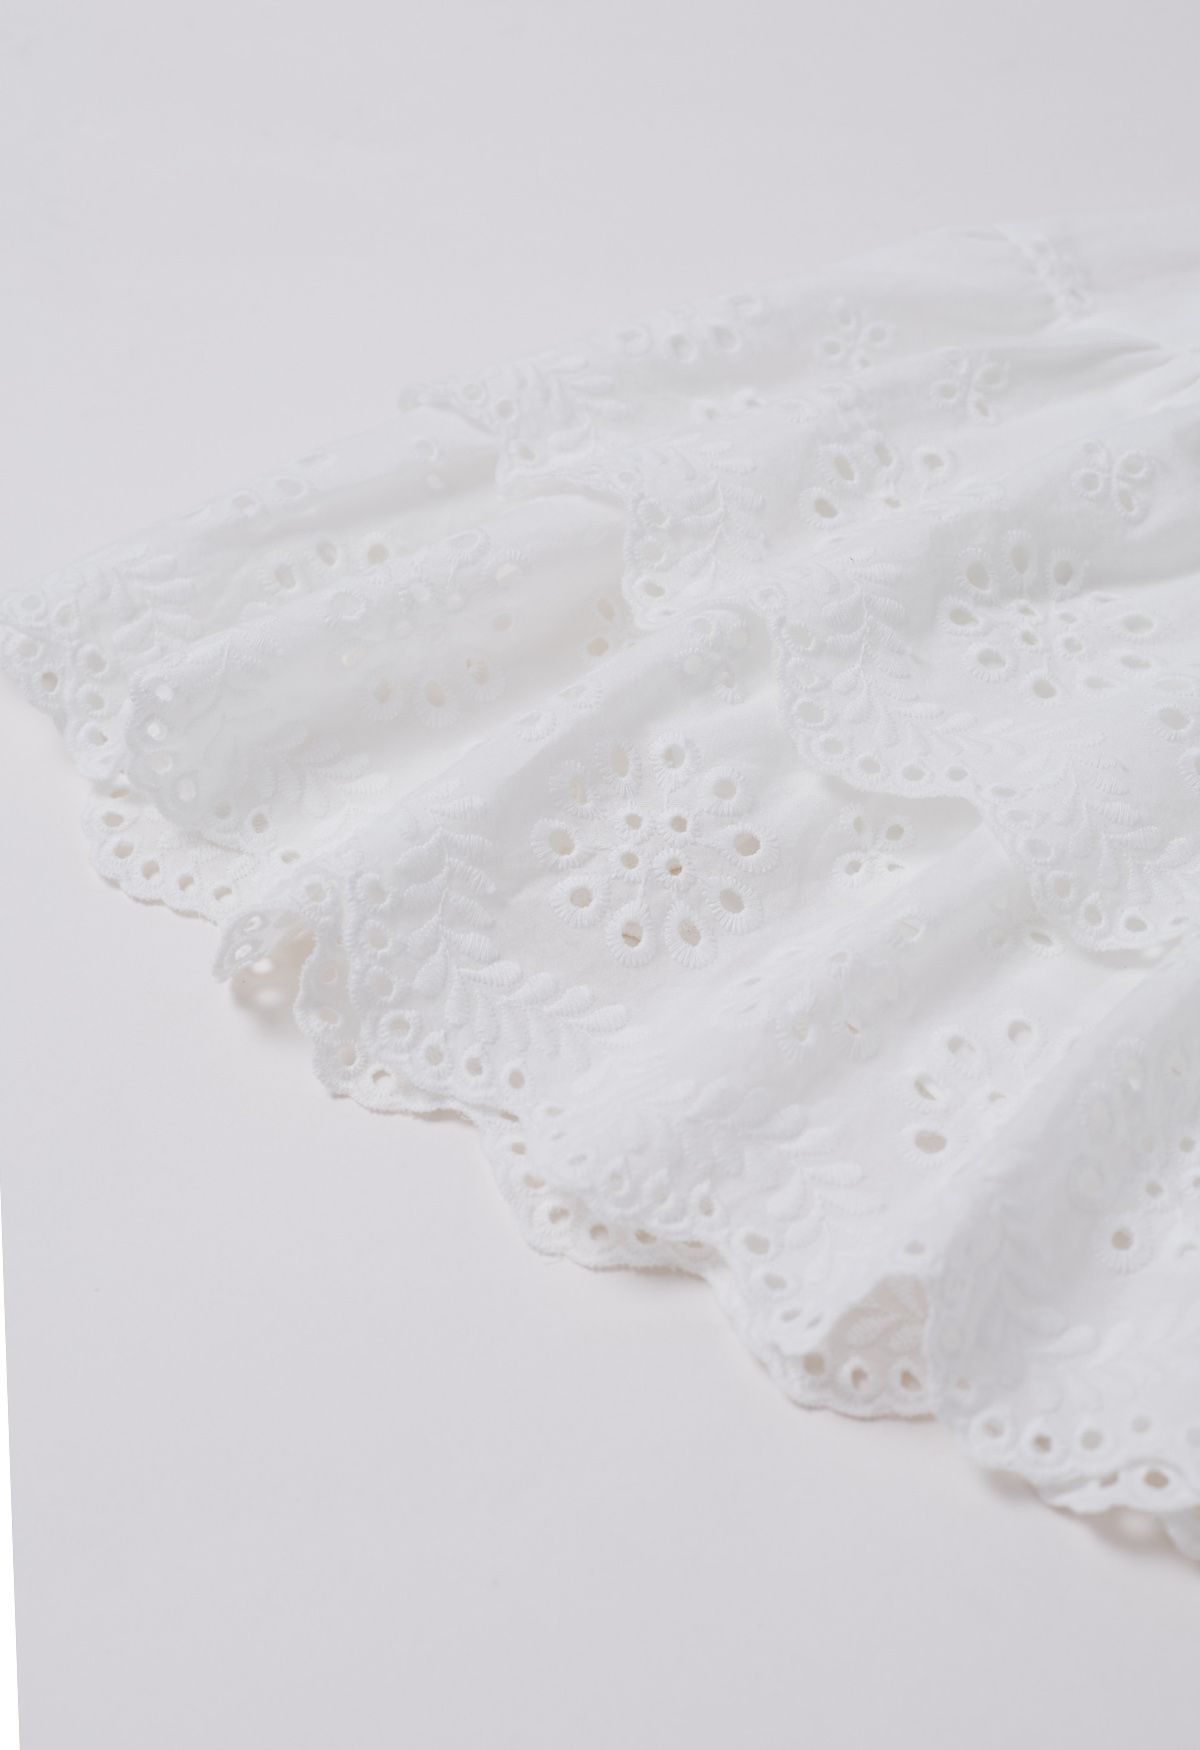 Minifalda escalonada con bordado de ojales en blanco